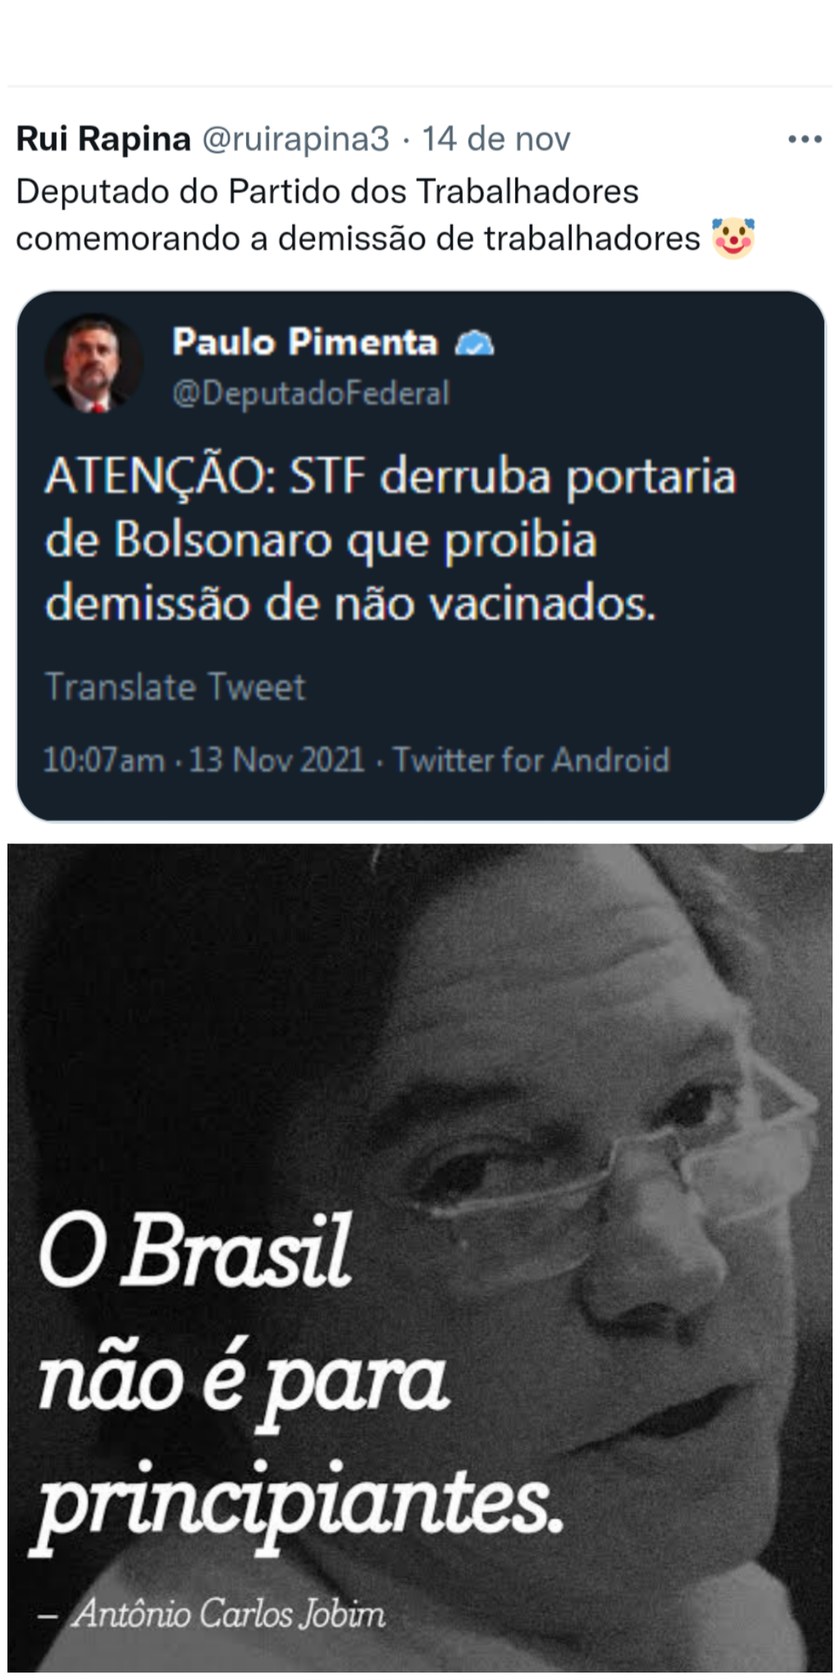 O Brasil não é para principiantes - meme